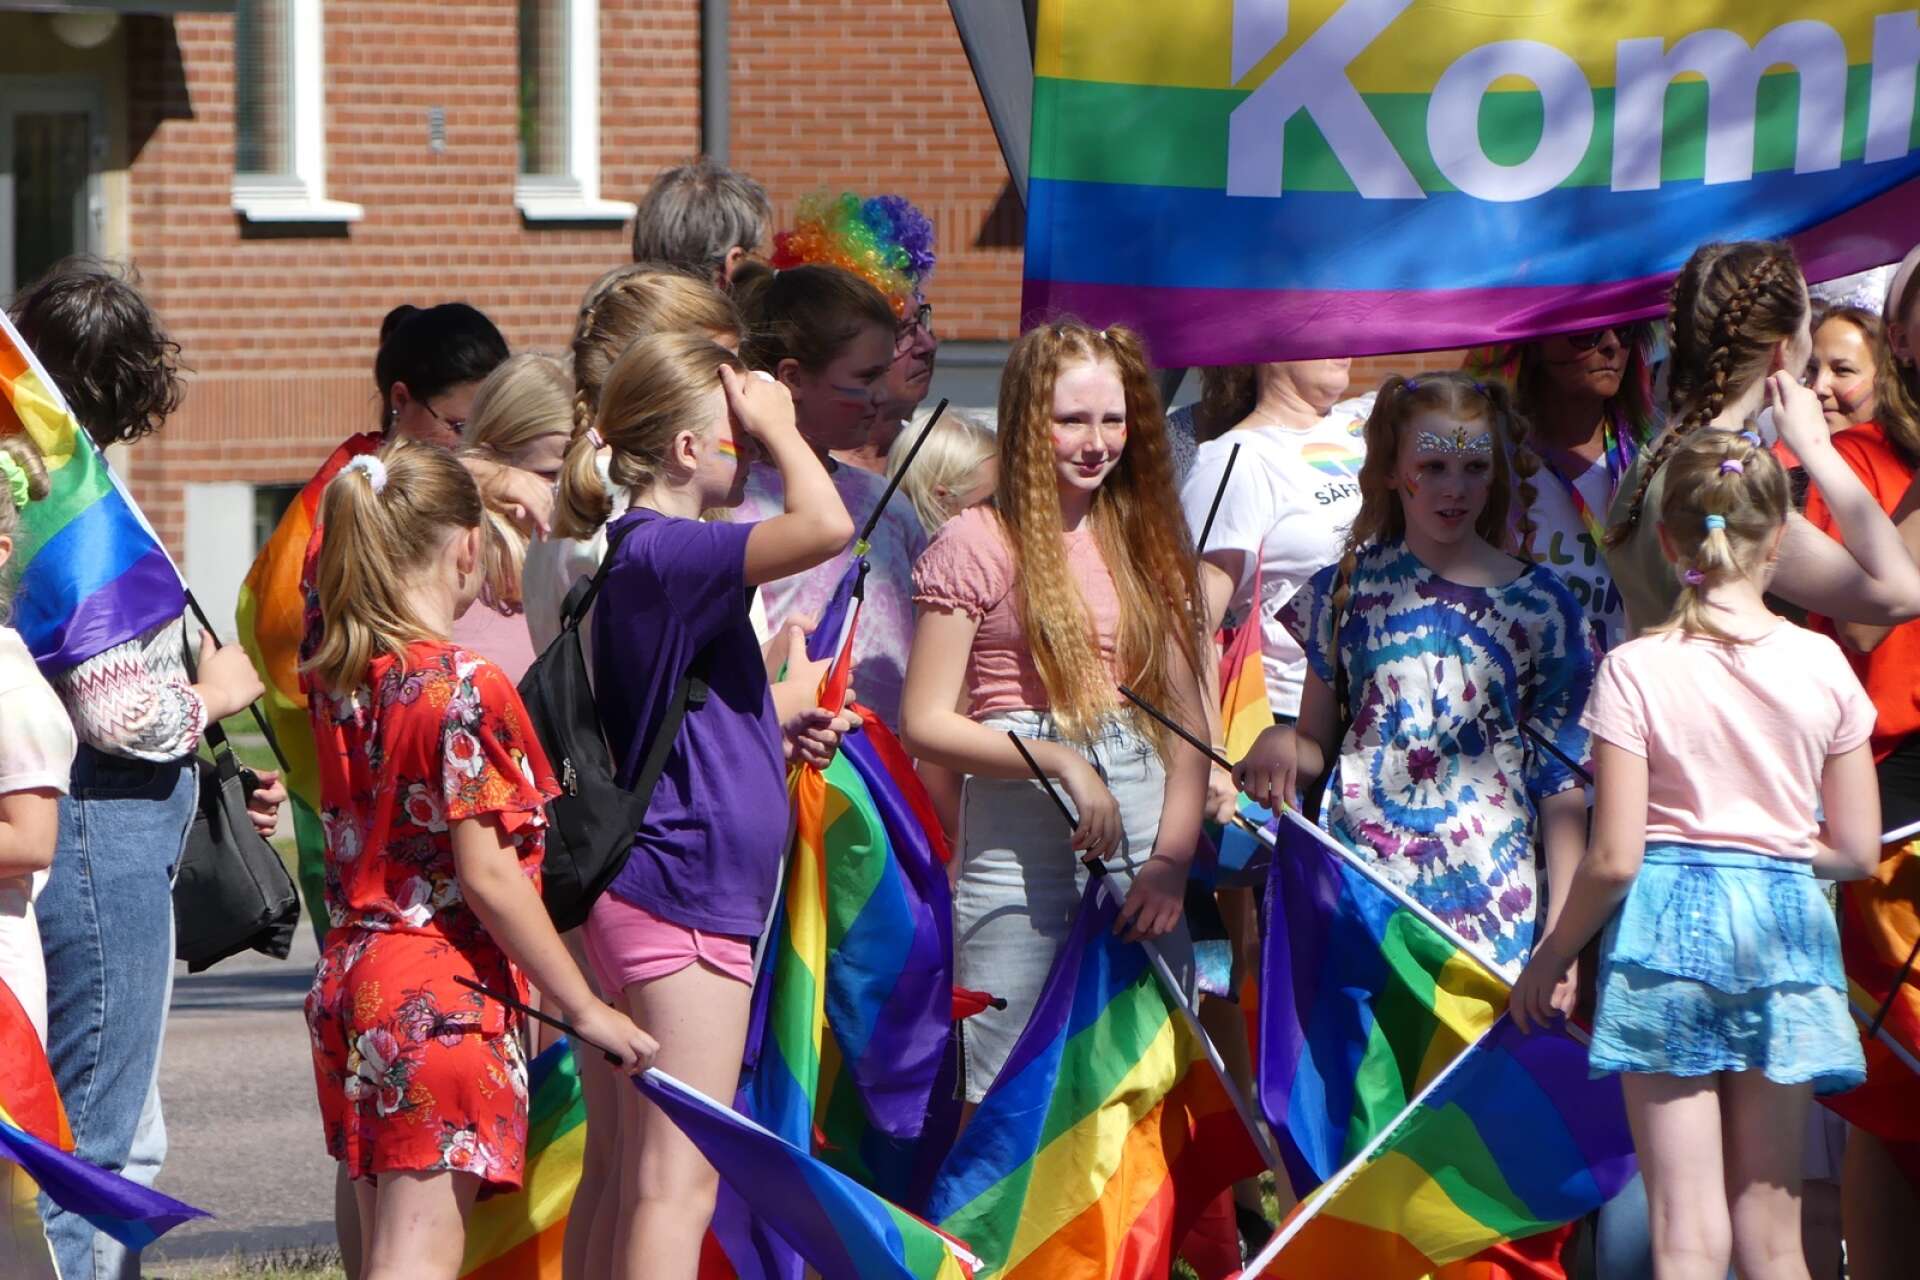 Förra årets pridefestival var stämningsfull, solig och det var mycket kärlek i luften. Något man hoppas på i år igen. (arkiv)